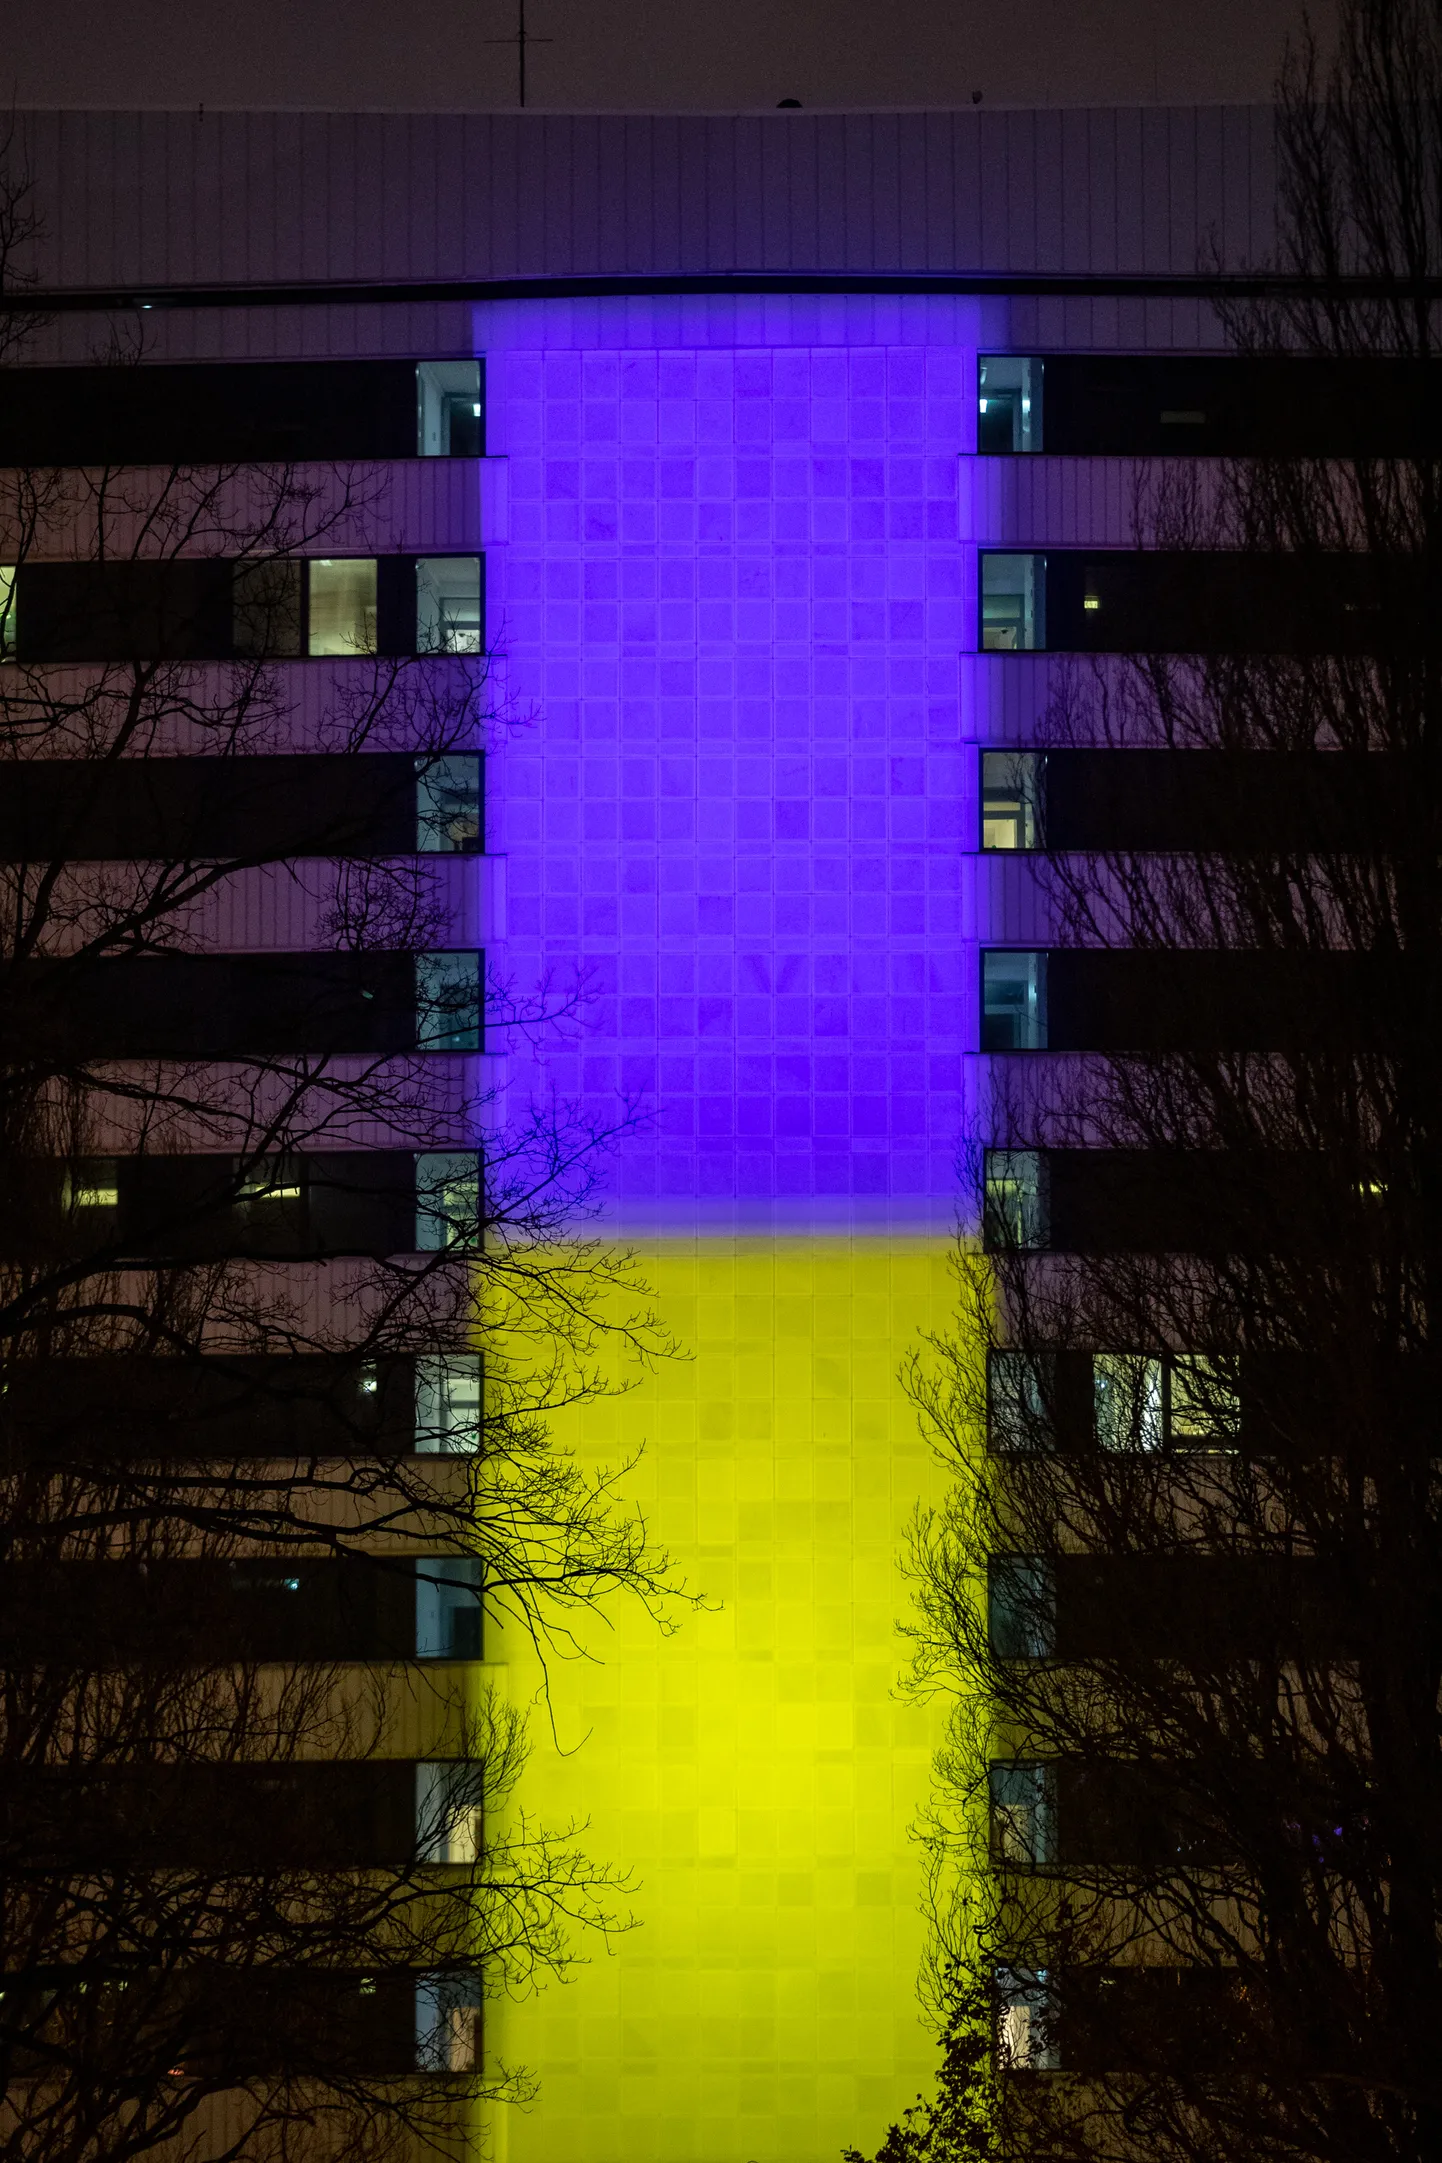 Министерство иностранных делЭстонии  в цветах украинского флага. ФОТО: Ээро Вабамяги/Postimees